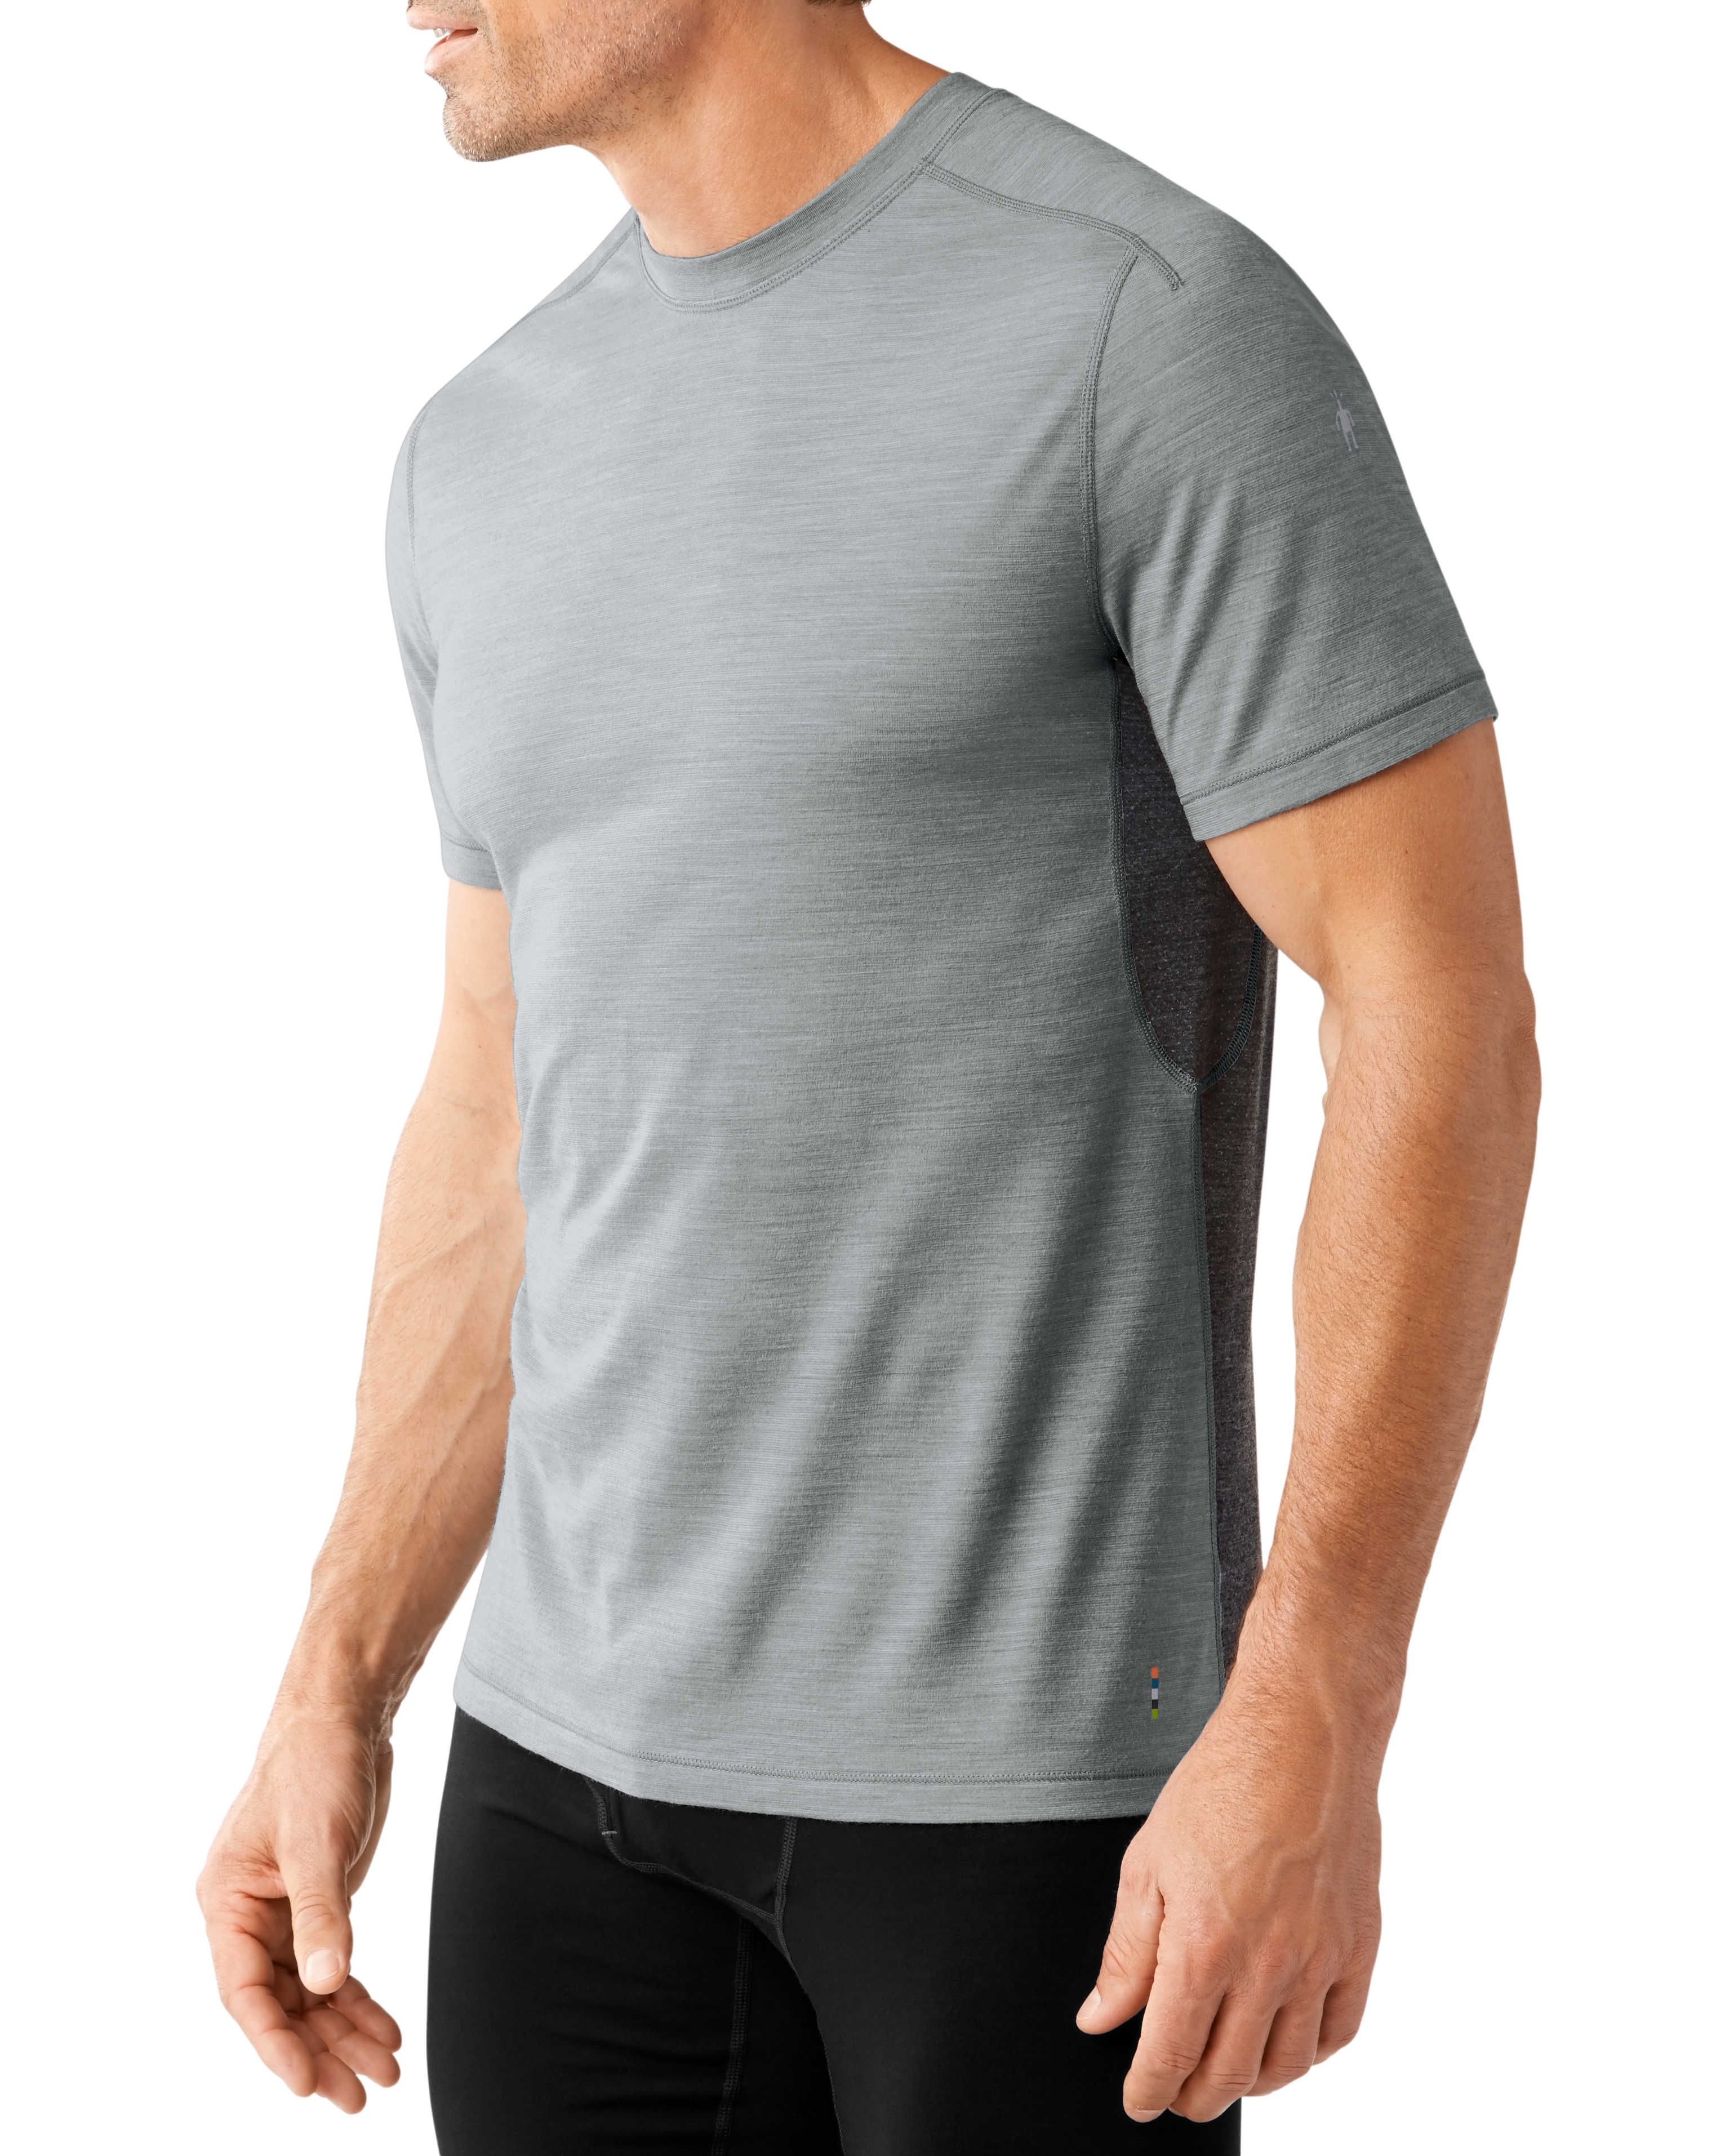 T-shirt Phd Ultra Light Short Sleeve